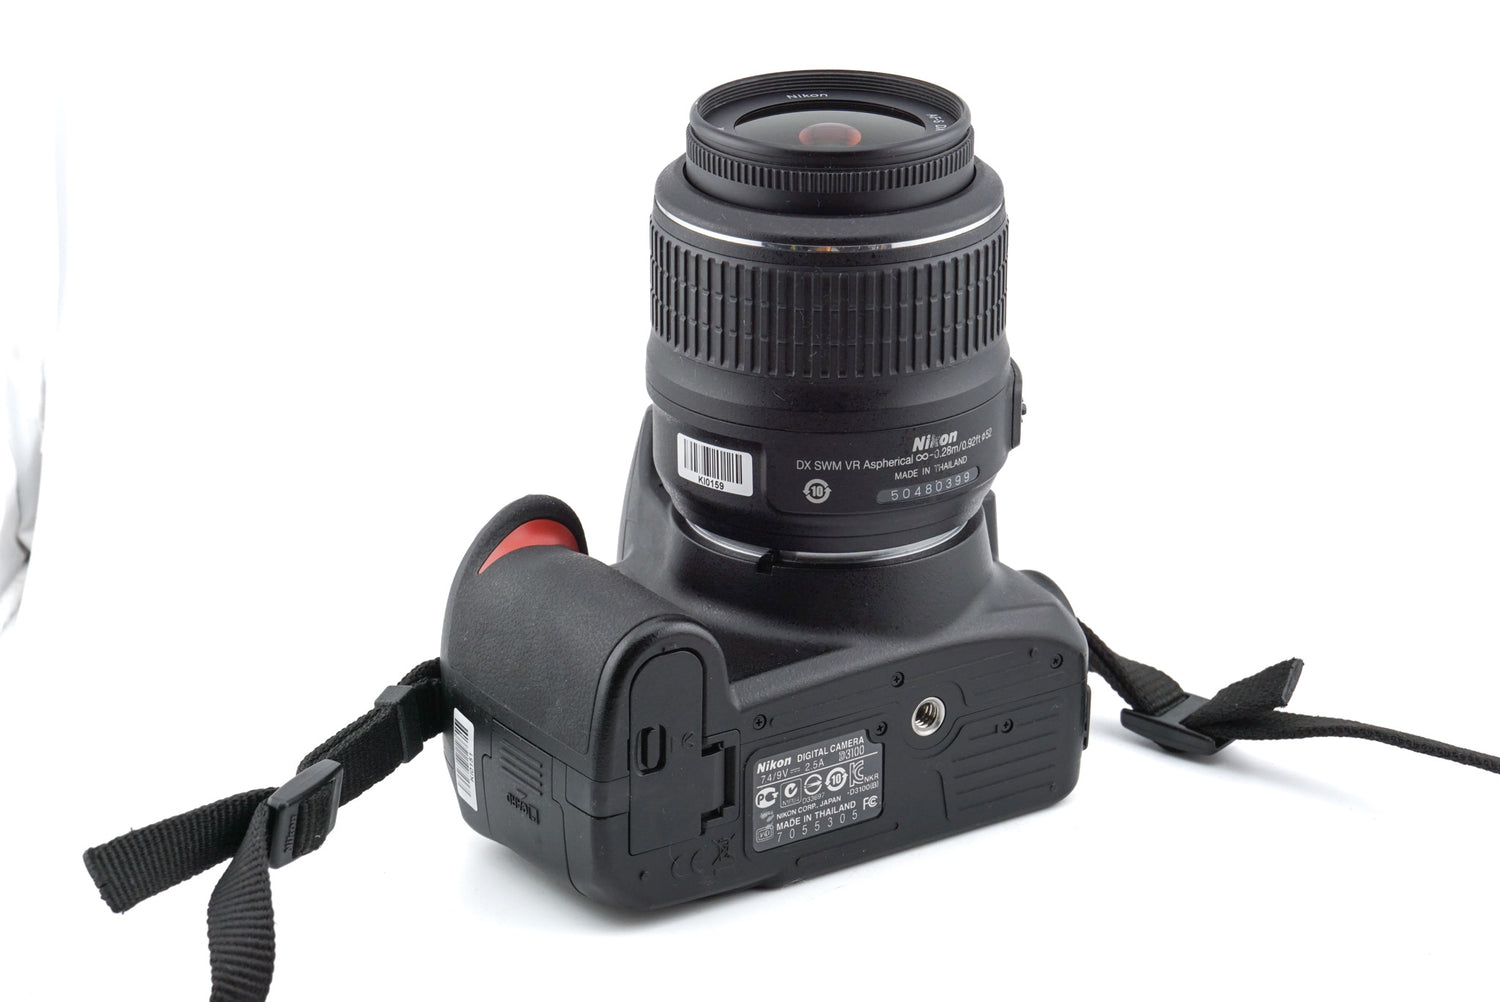 Nikon + 18-55mm f3.5-5.6 G VR AF-S Nikkor